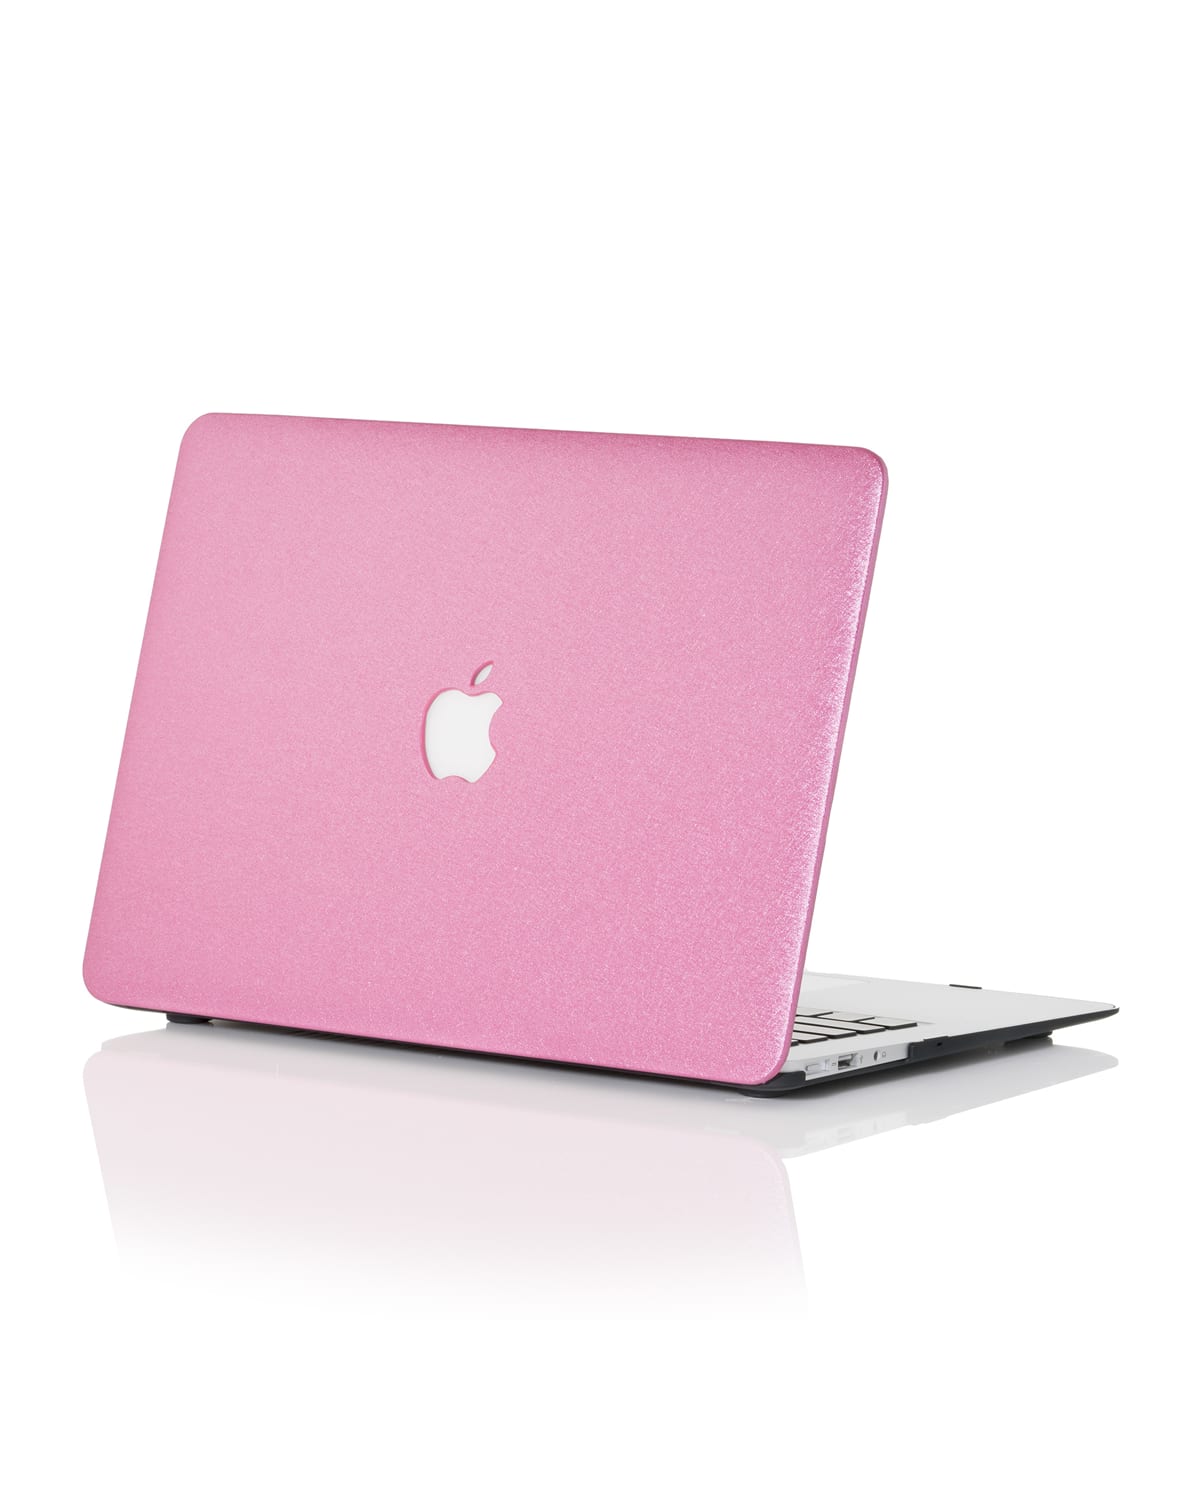 Chic Geeks Silky 15" Macbook Pro Case With Touchbar In Pink Silk